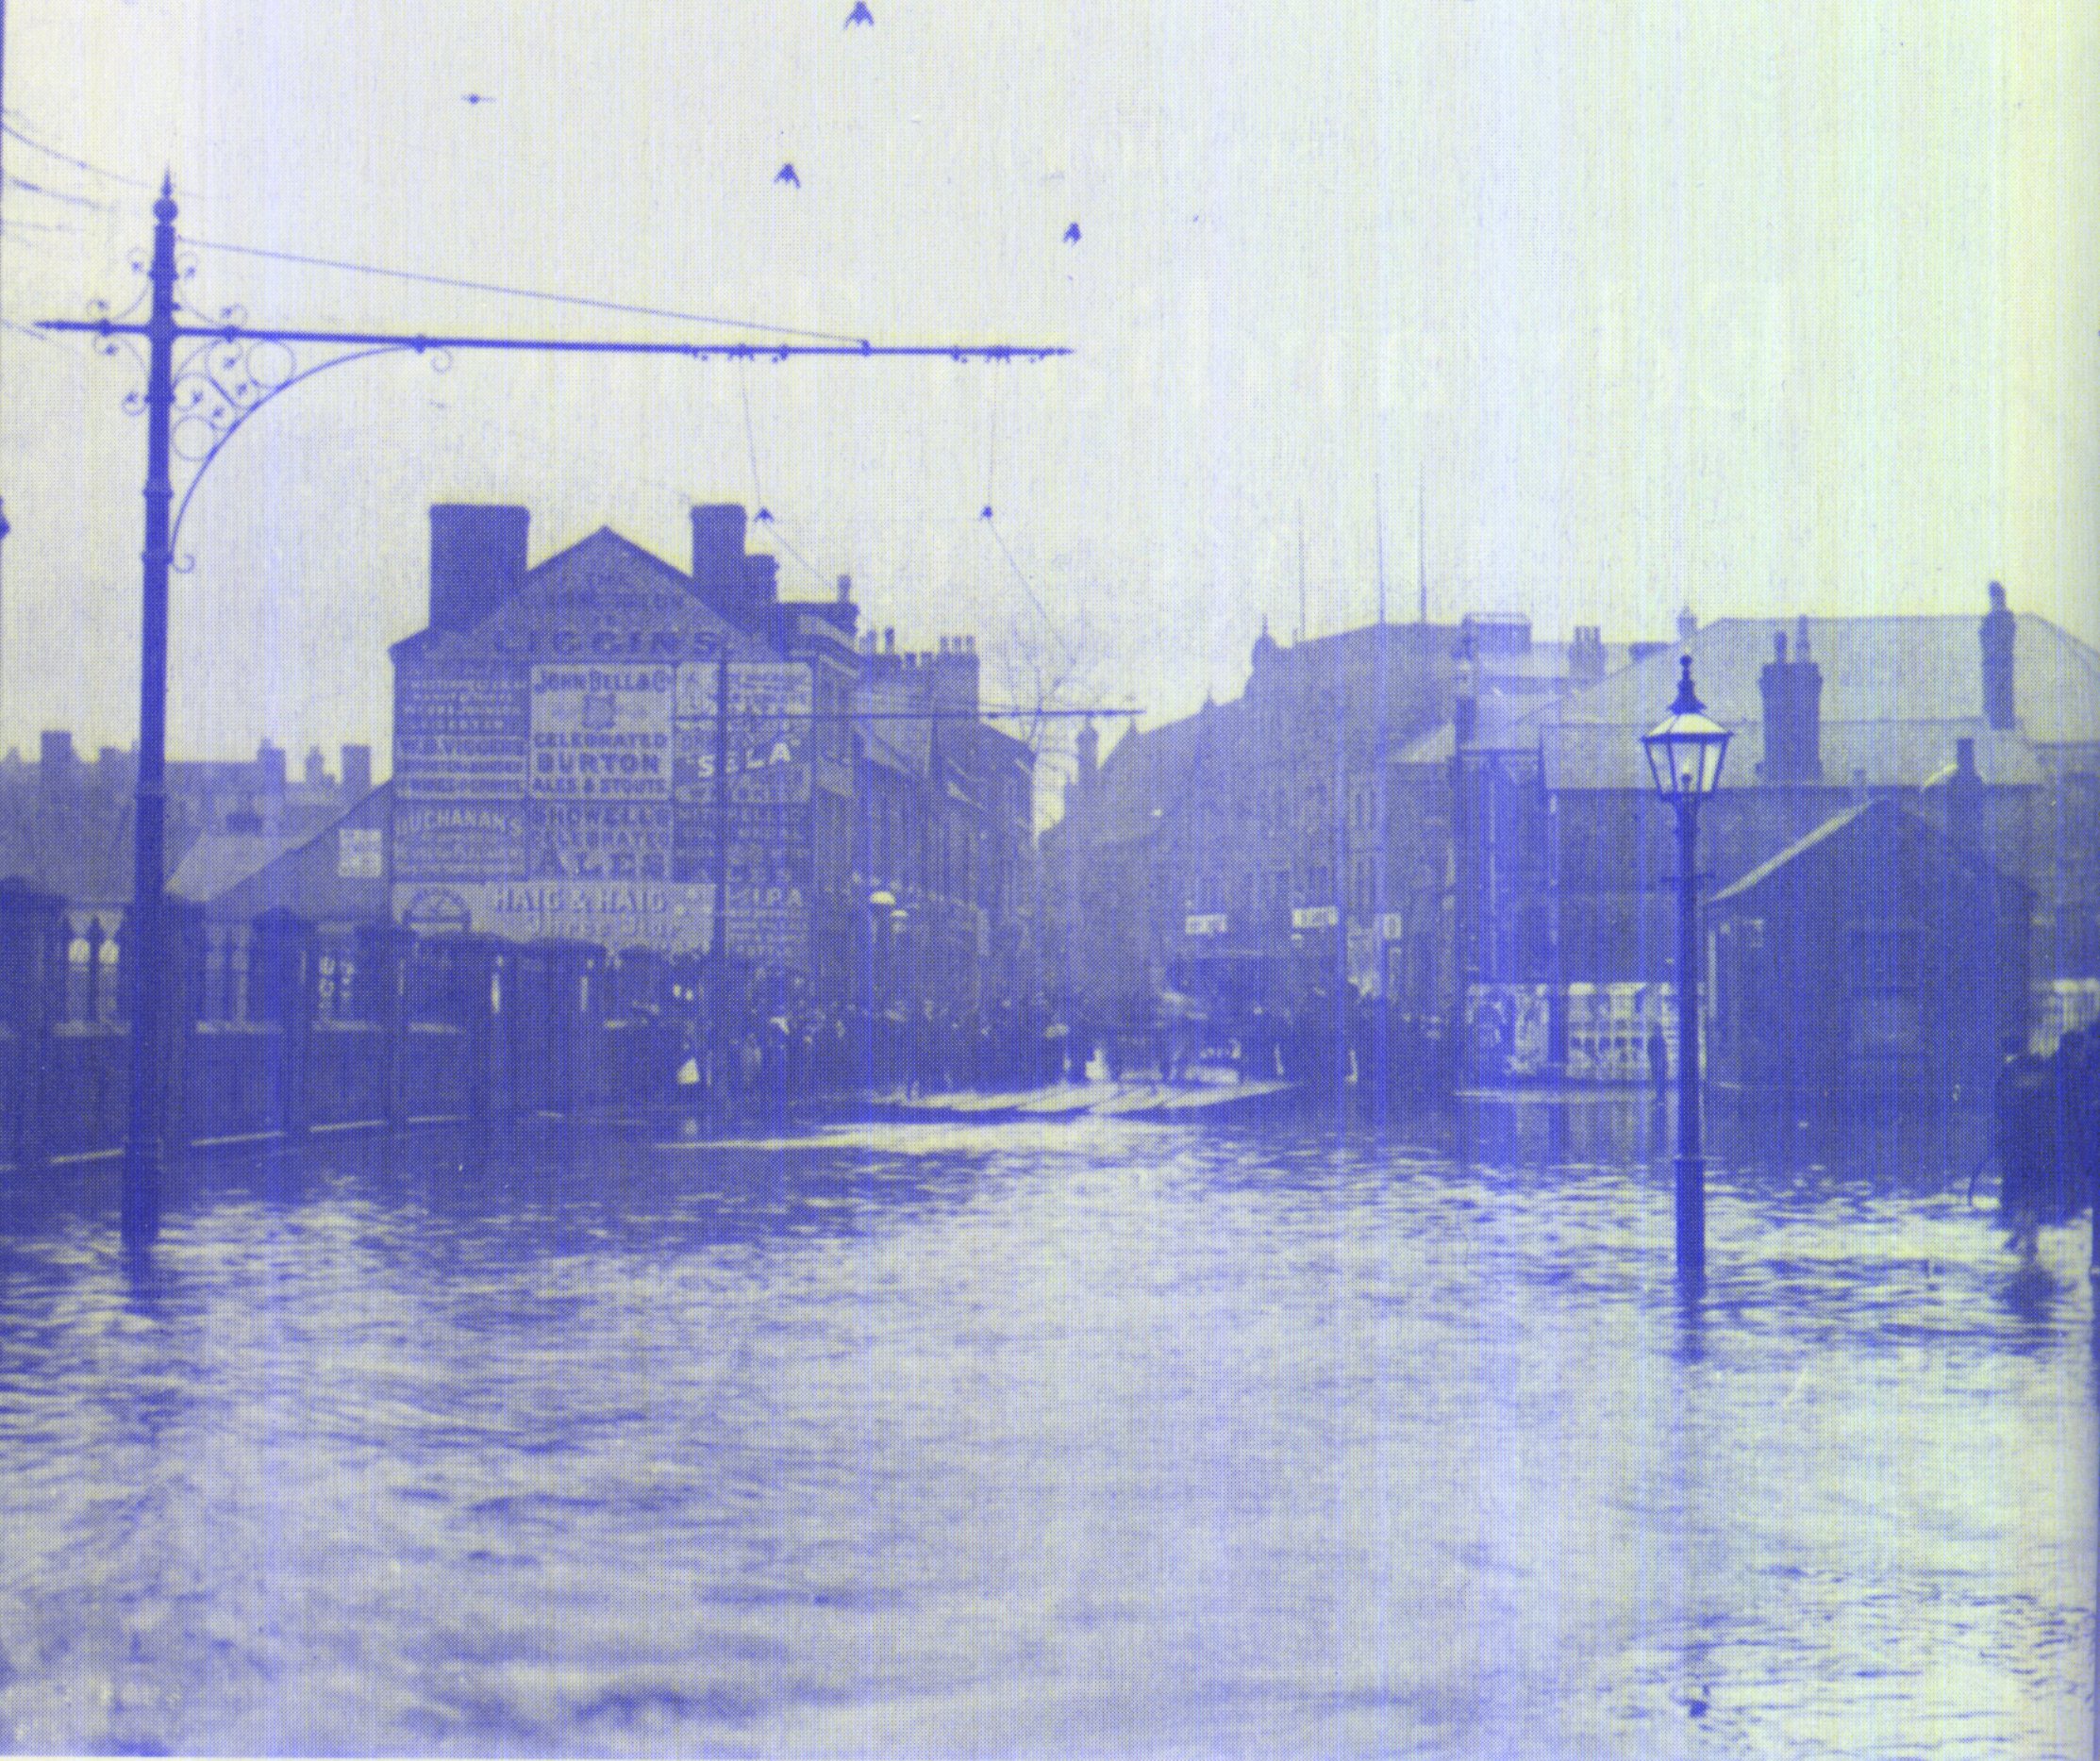 1924 flood in hales street